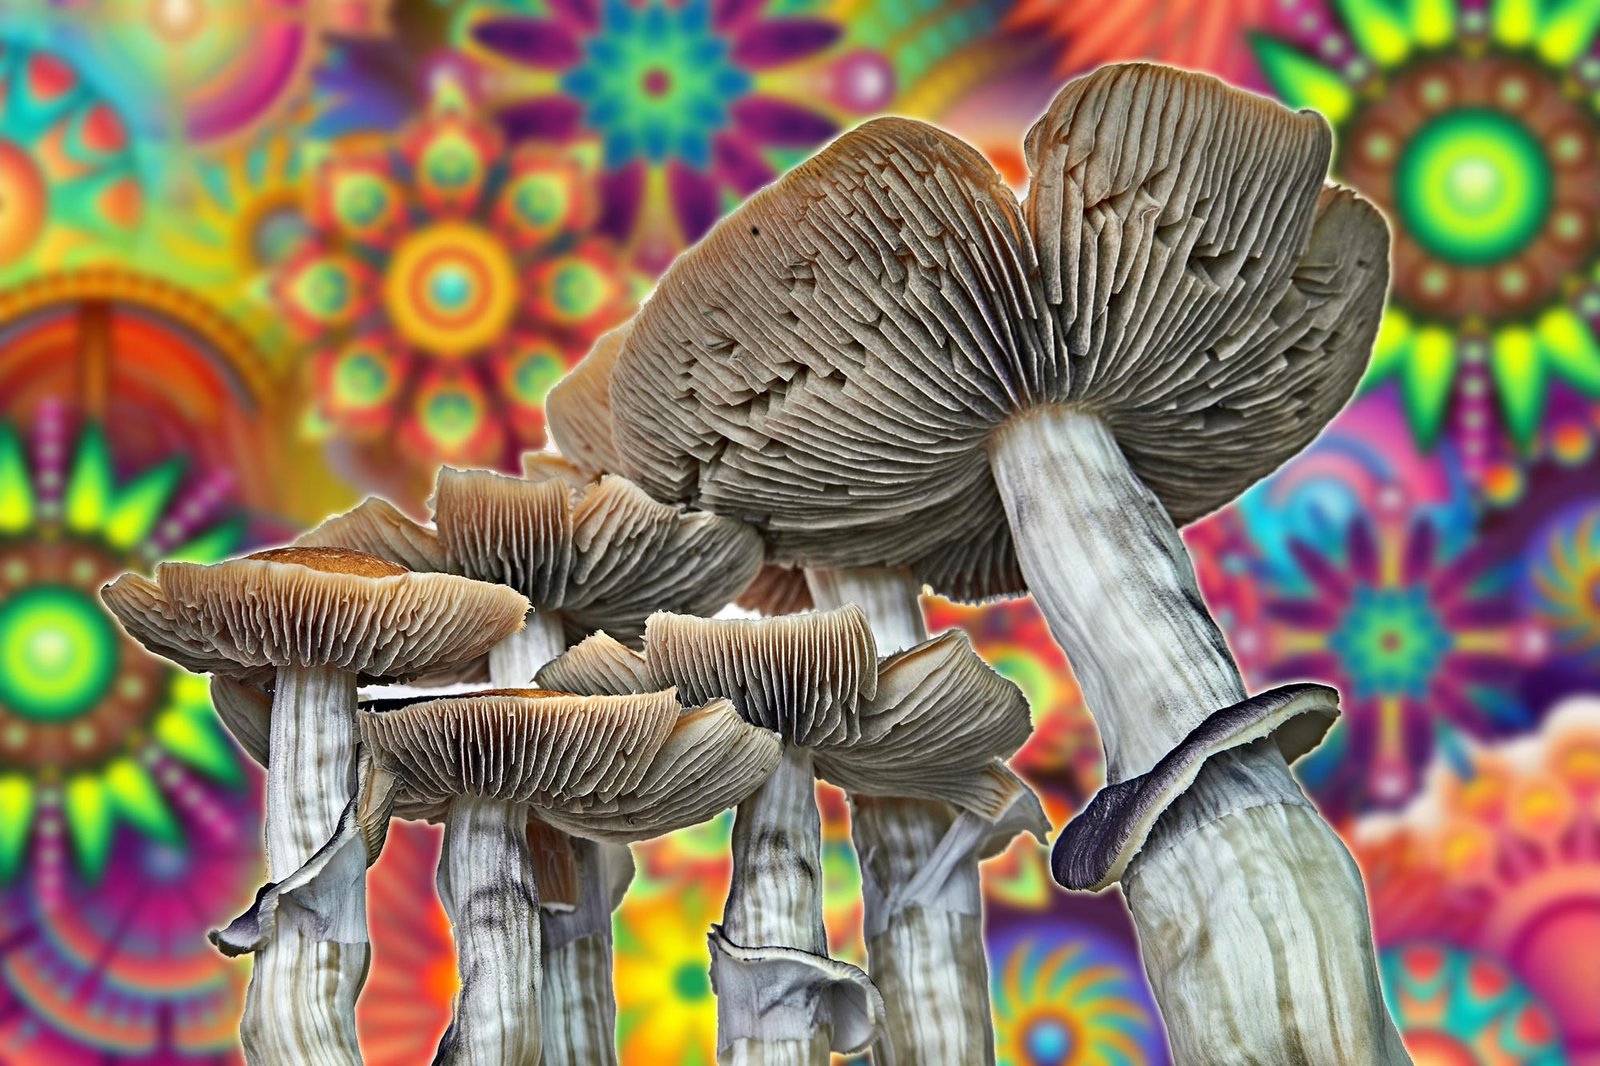 Rising Popularity of “Magic” Amanita Mushrooms Raises Alarms – Scientists Warn of Serious Dangers